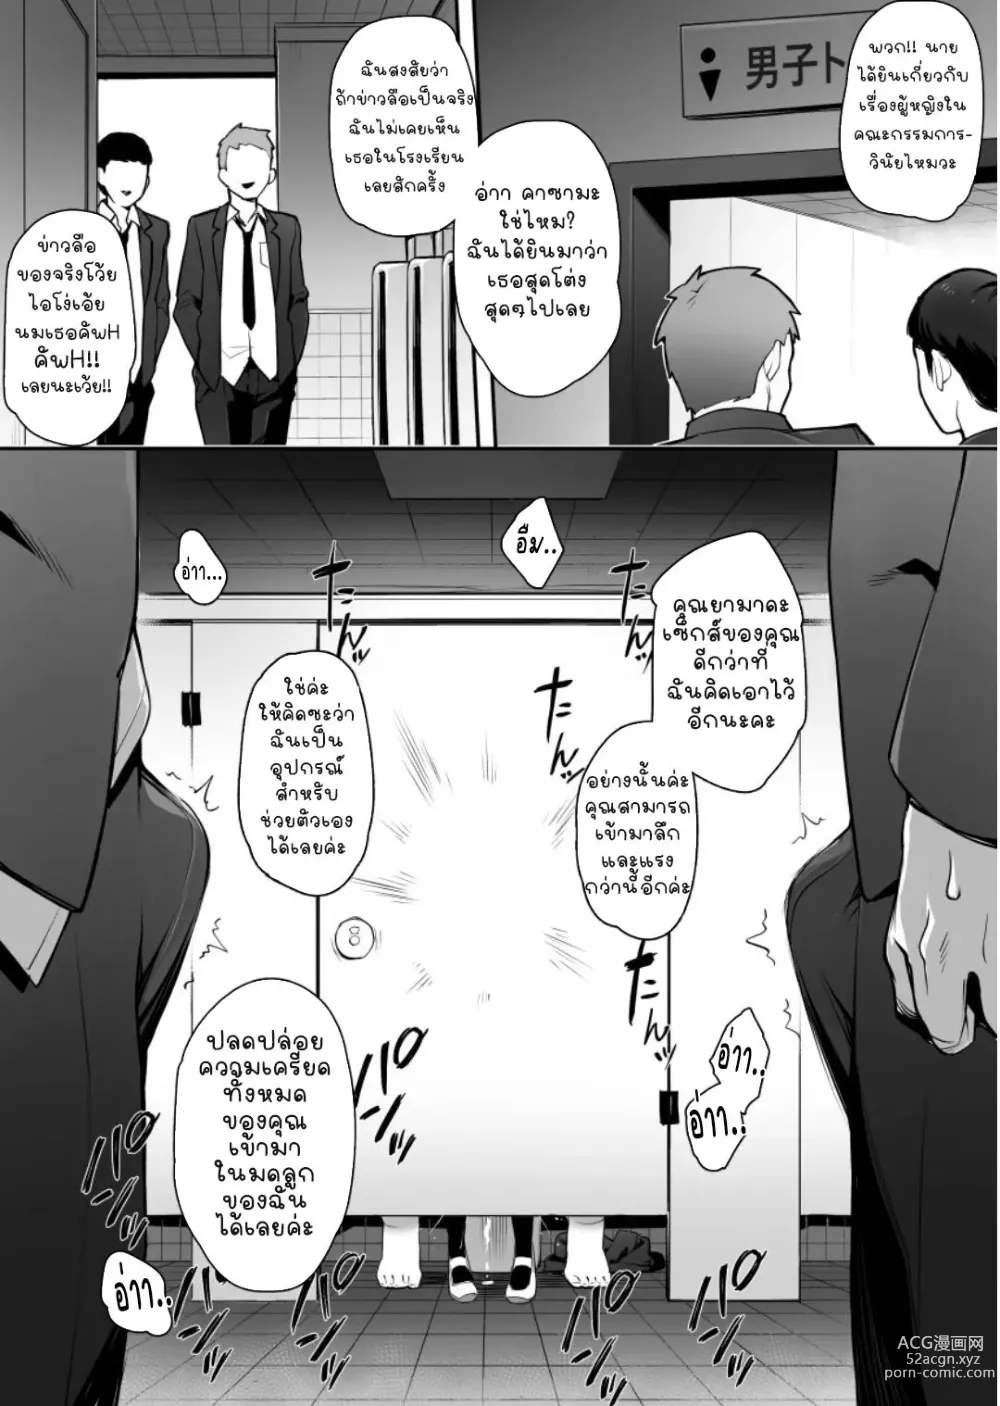 Page 11 of doujinshi มีข่าวลือว่าประธานคณะกรรมการวินัยคนใหม่นมโคตรเบิ้ม (decensored)